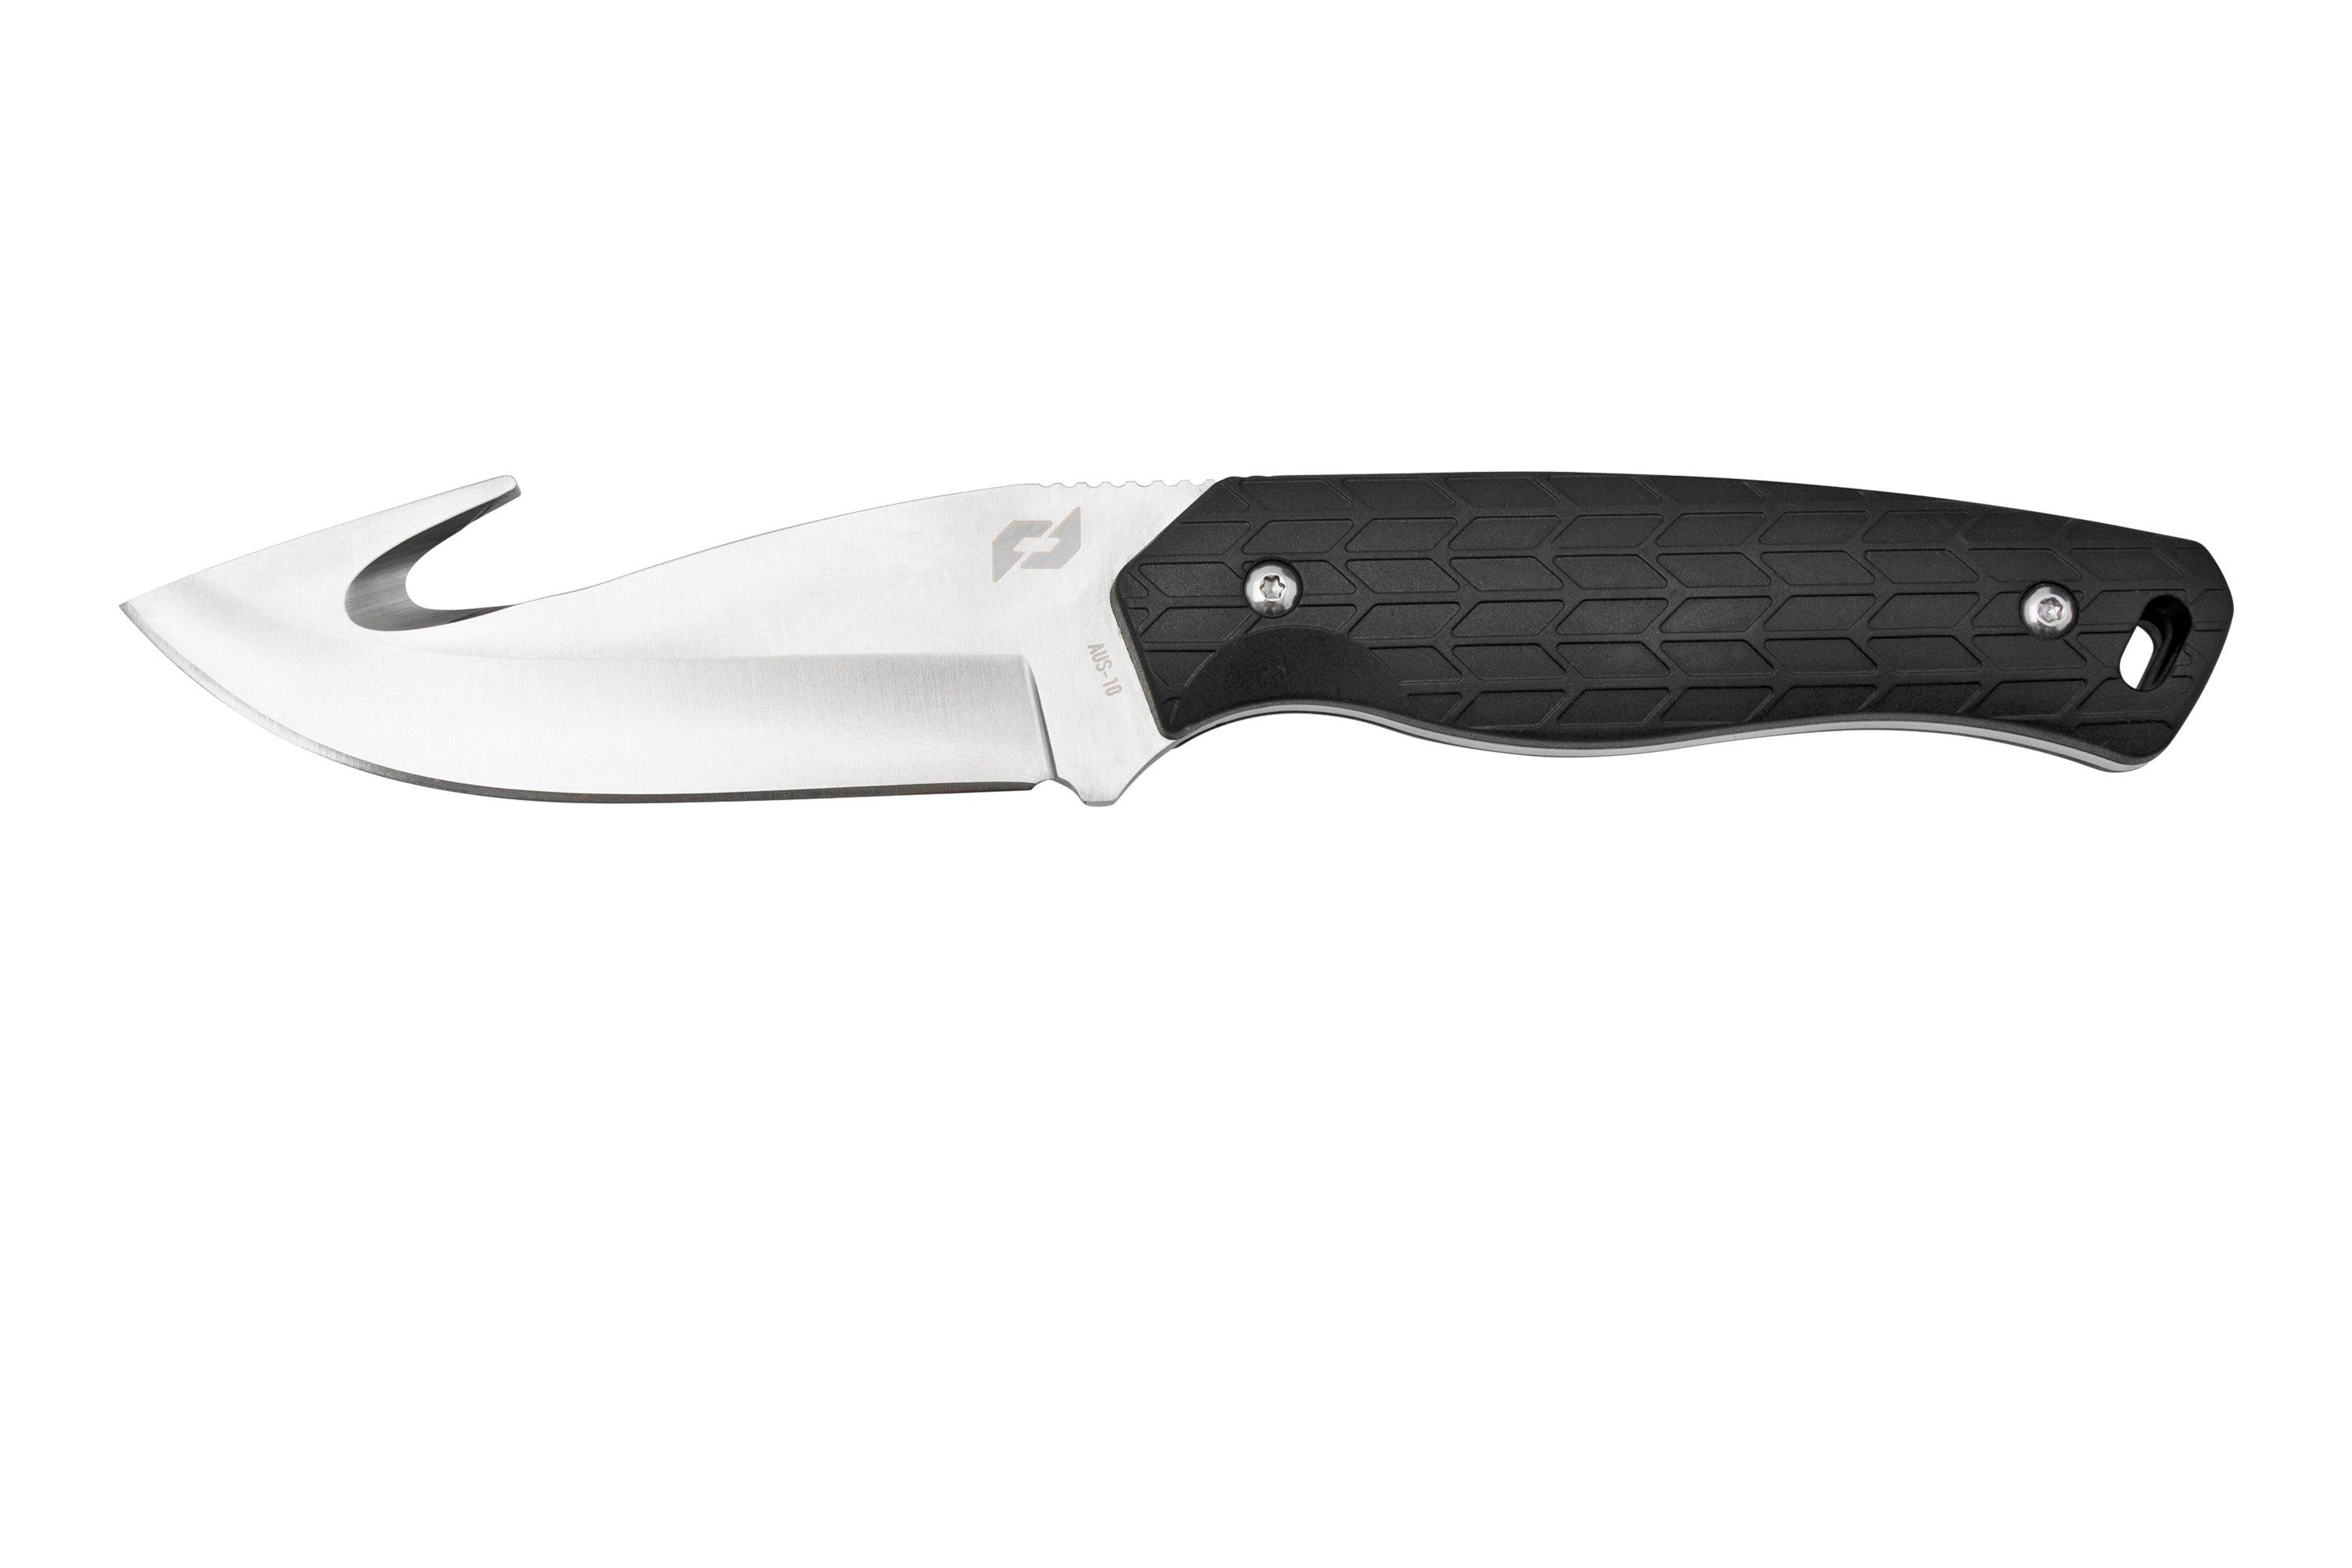 Schrade Exertion Gut Hook Knife 1159308, black fixed knife